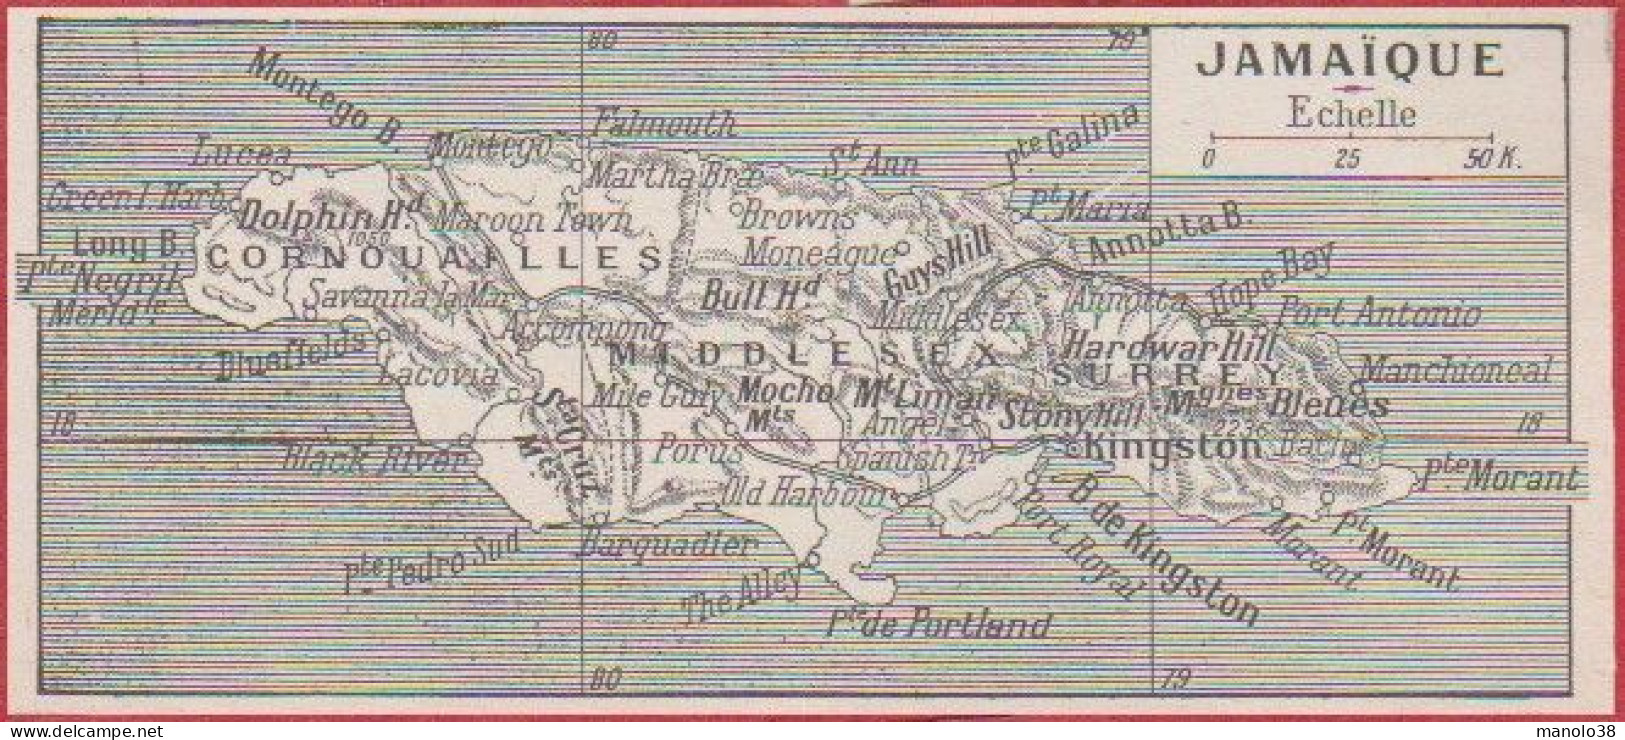 Carte De L'île De Jamaïque. Larousse 1948. - Historische Dokumente